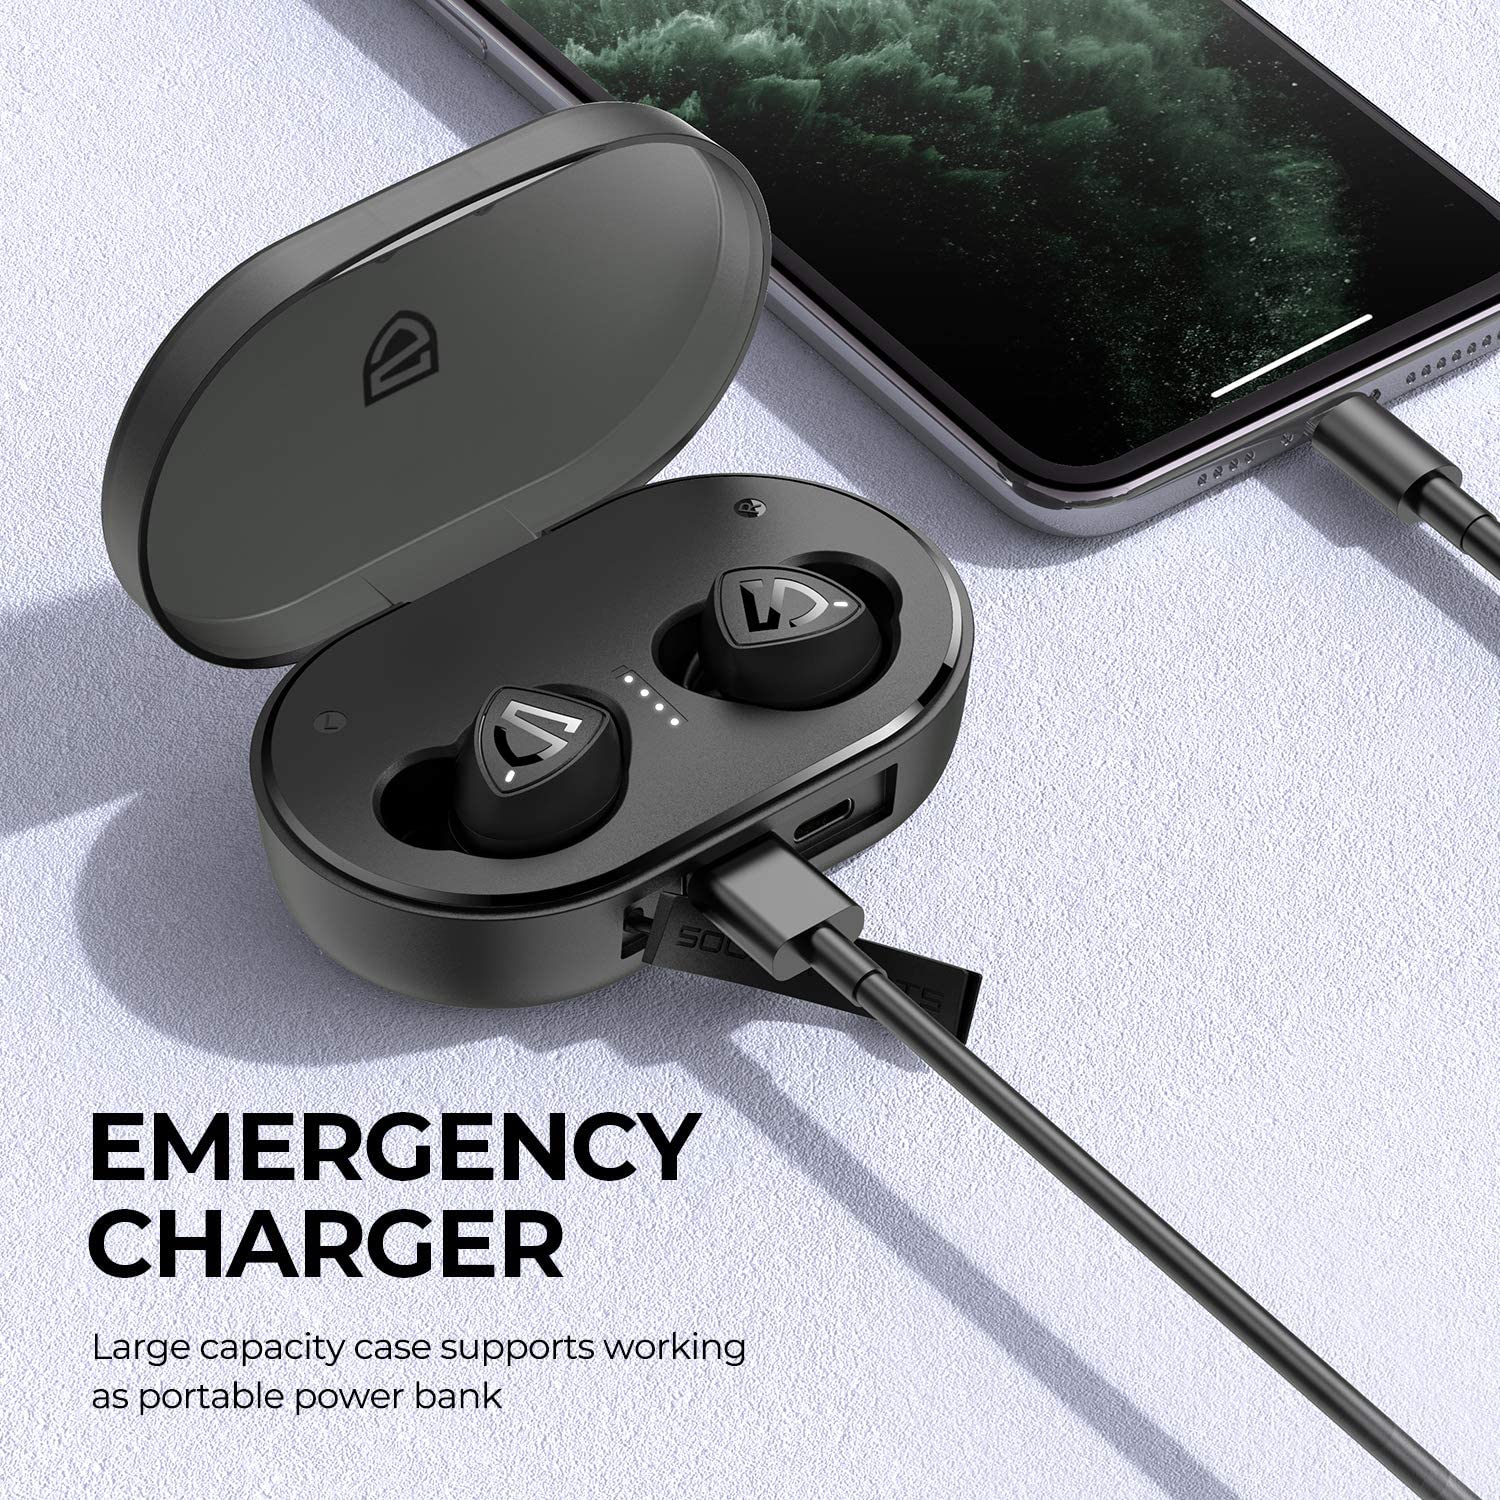 SOUNDPEATS TrueShift2 TWS Bluetooth In-Ear Earphones Sri Lanka SimplyTek